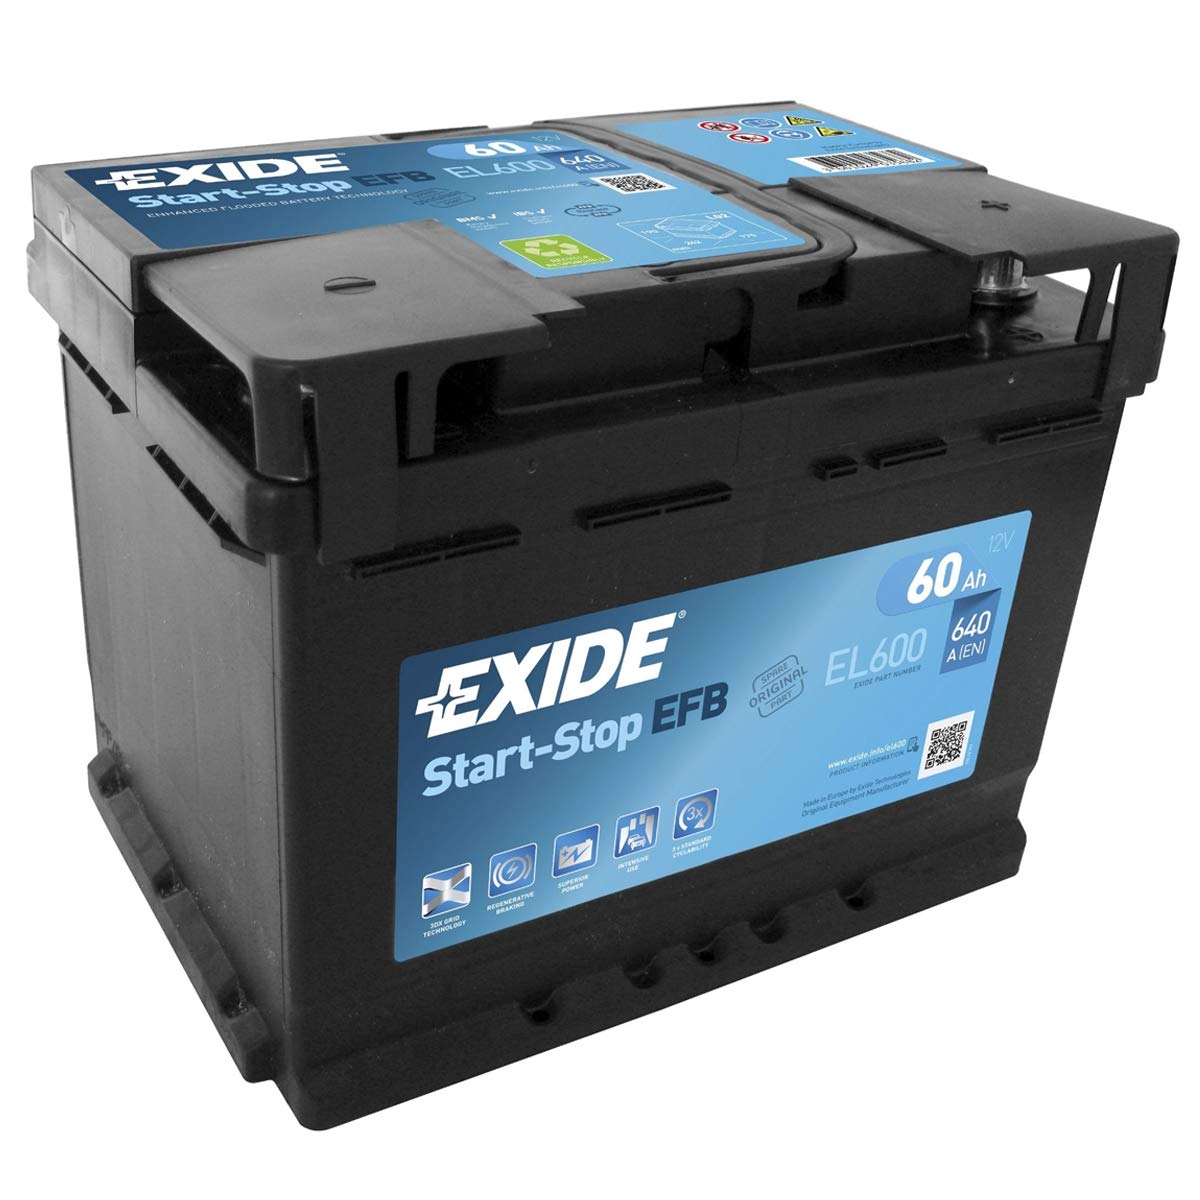 Exide EL600 EFB Autobatterie, 12 V, 60 Ah, 640 CCA